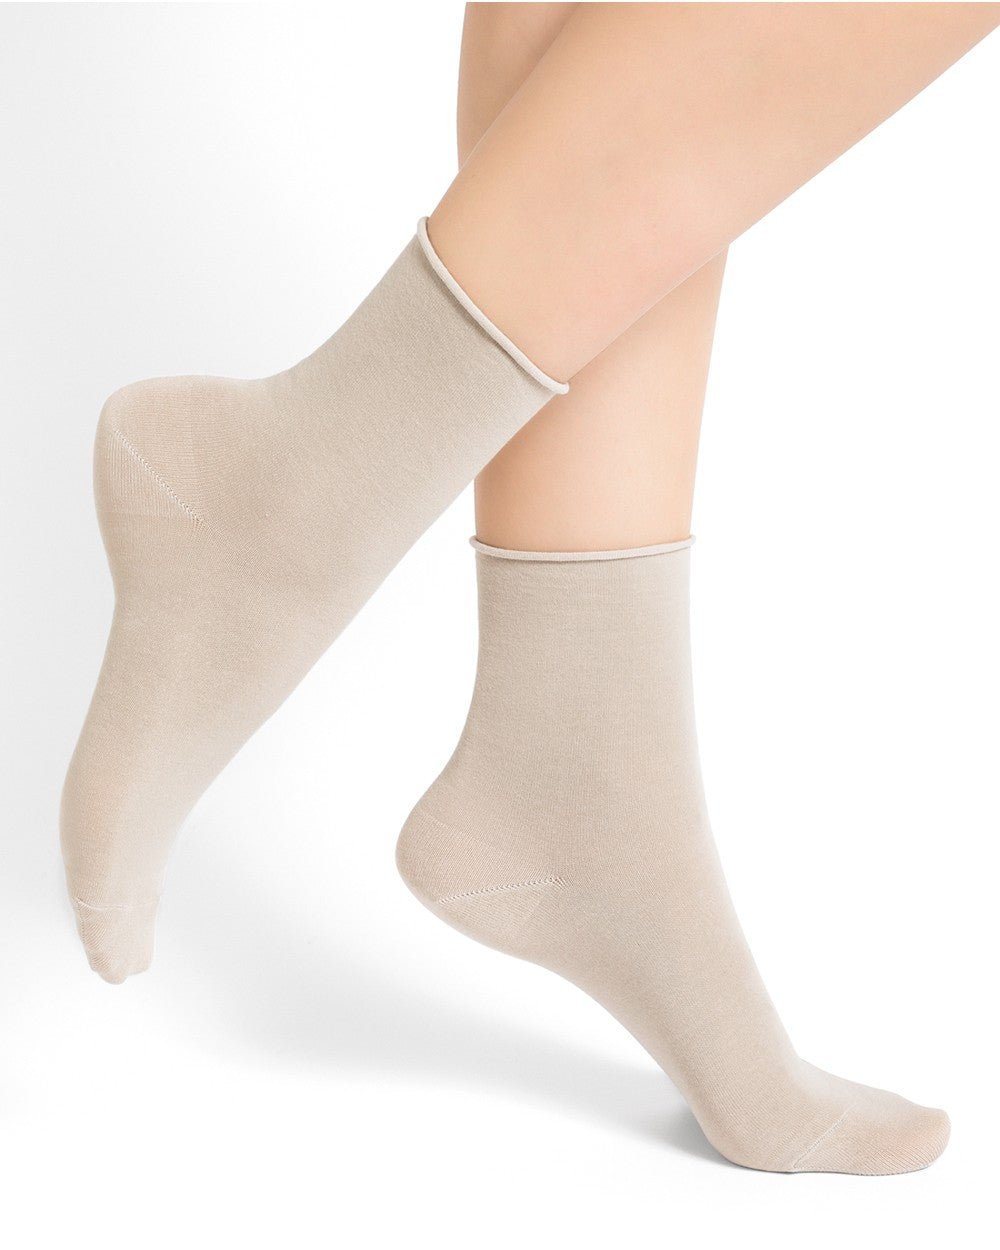 Velvet Cotton Ankle Socks - Bleuforet - Danali - 6593-Sahara